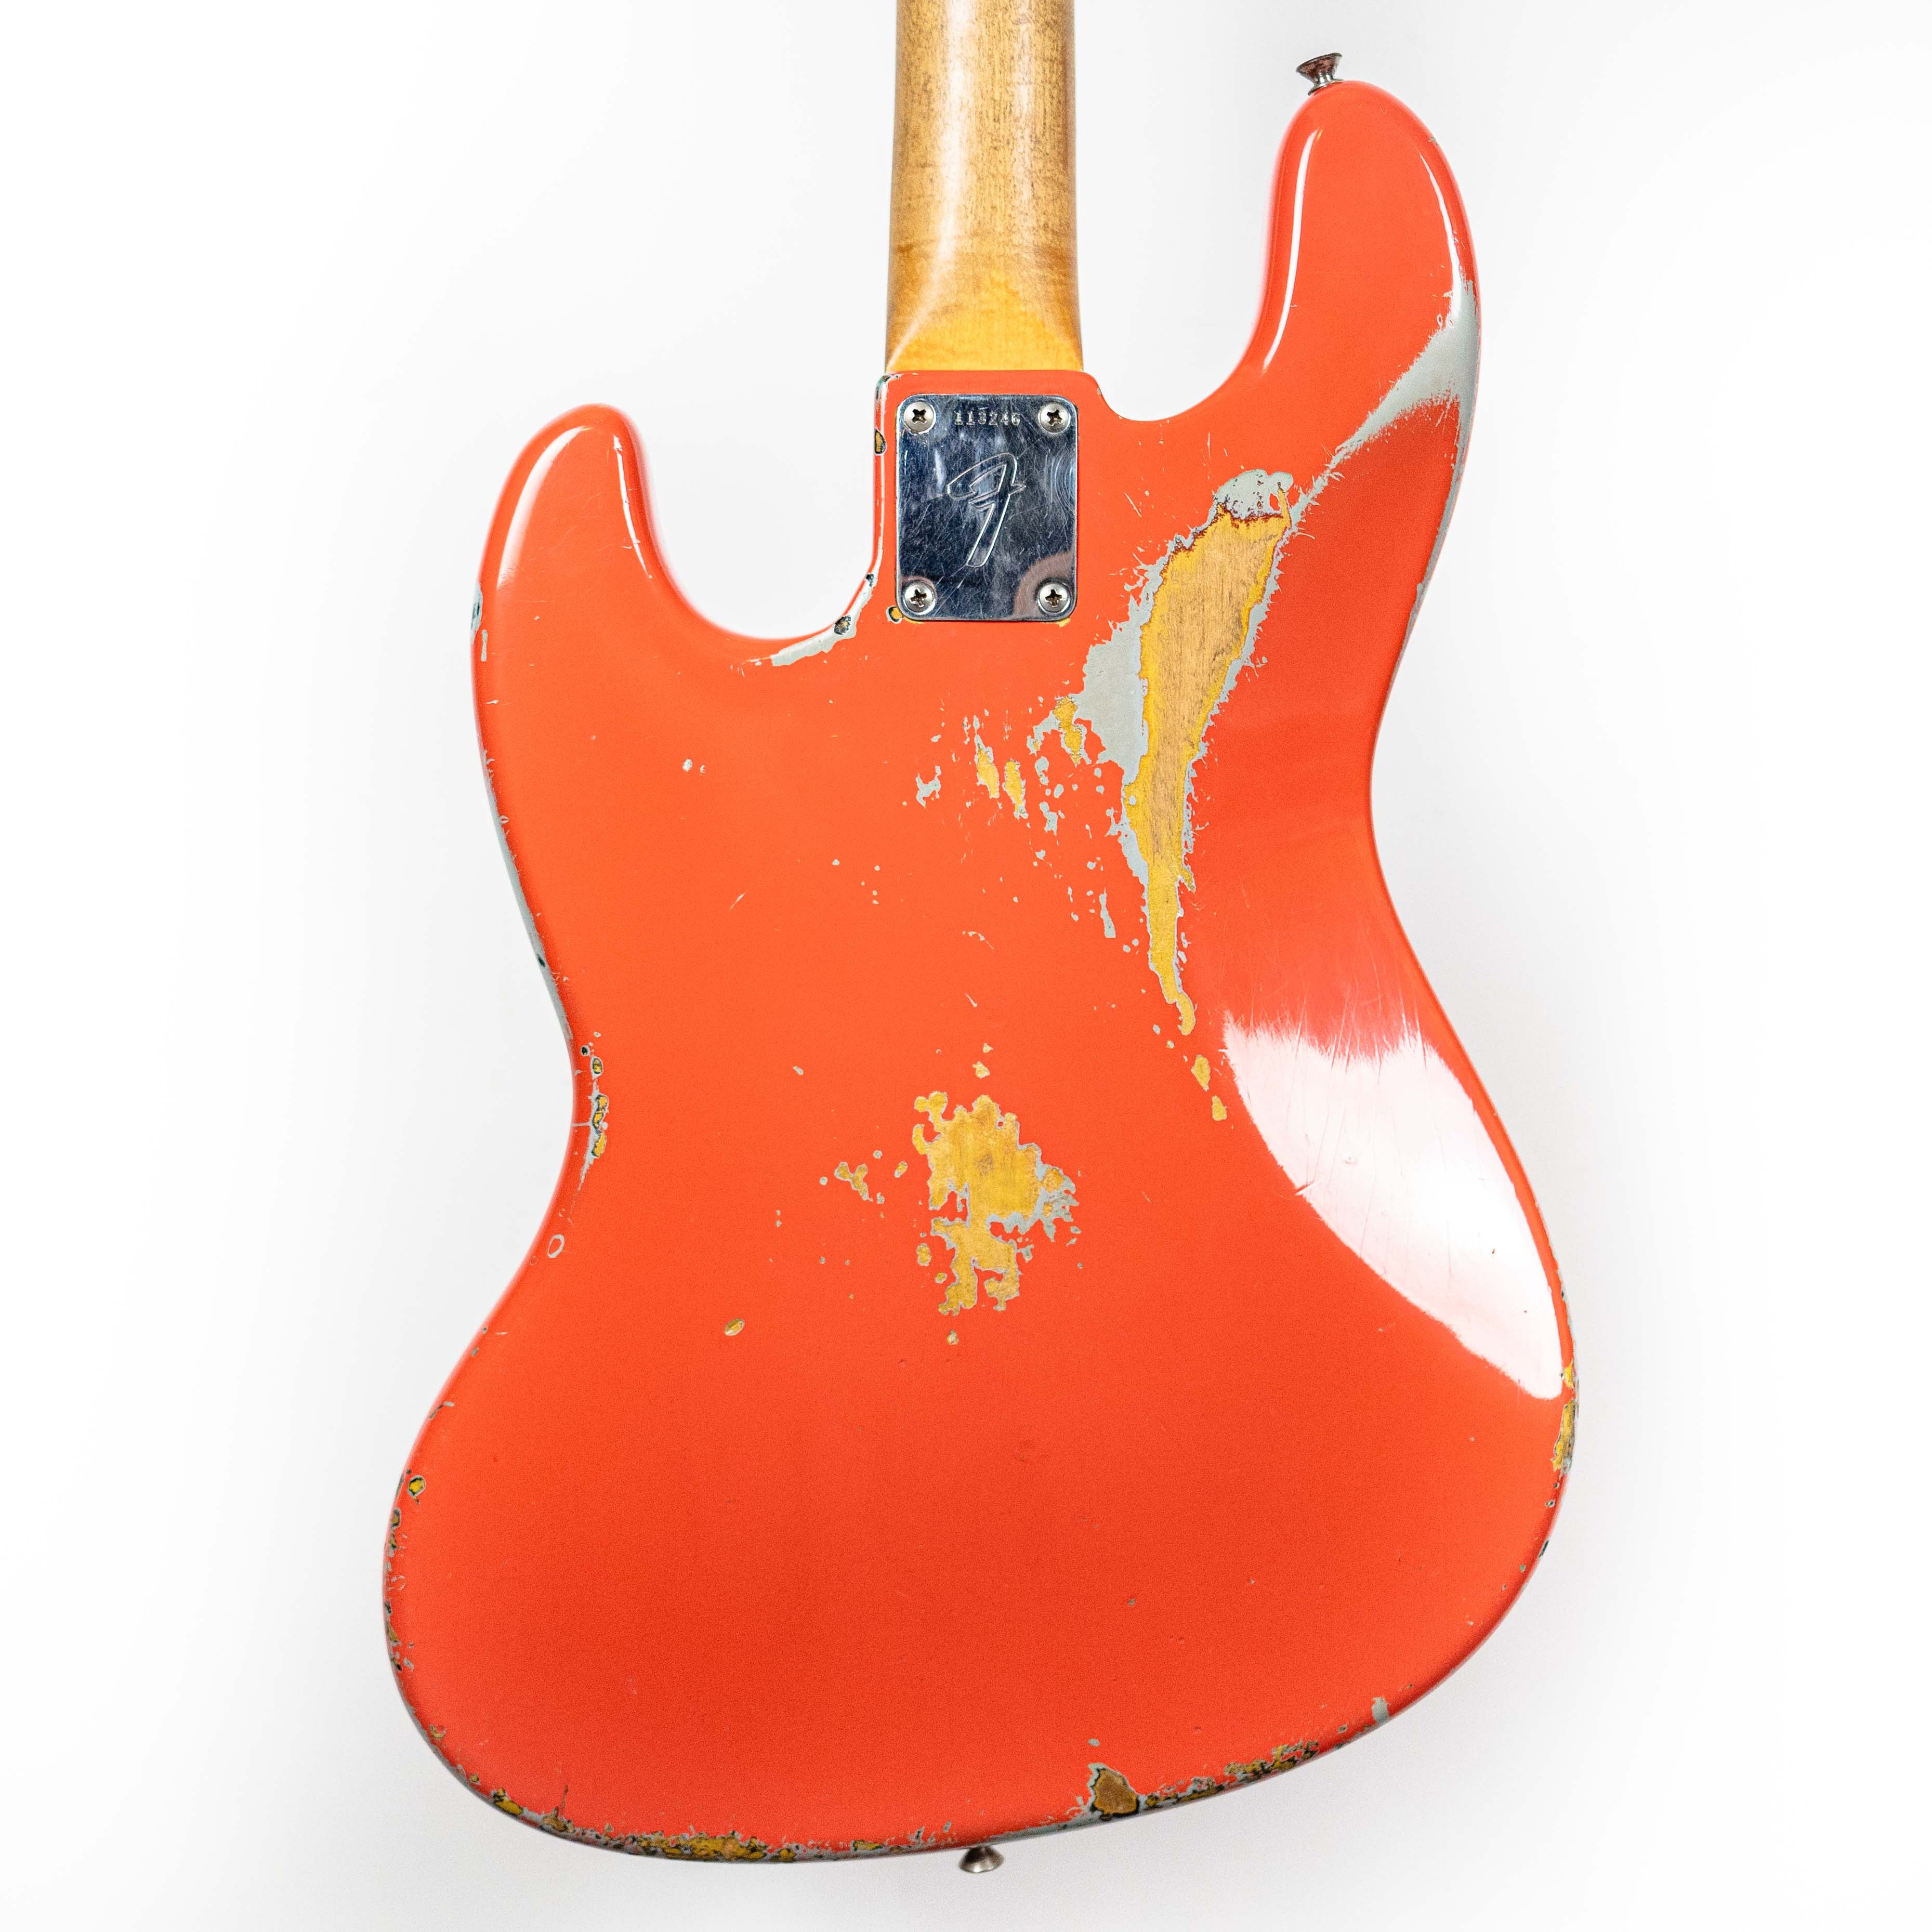 Fender 1966 Jazz Bass Fiesta Red